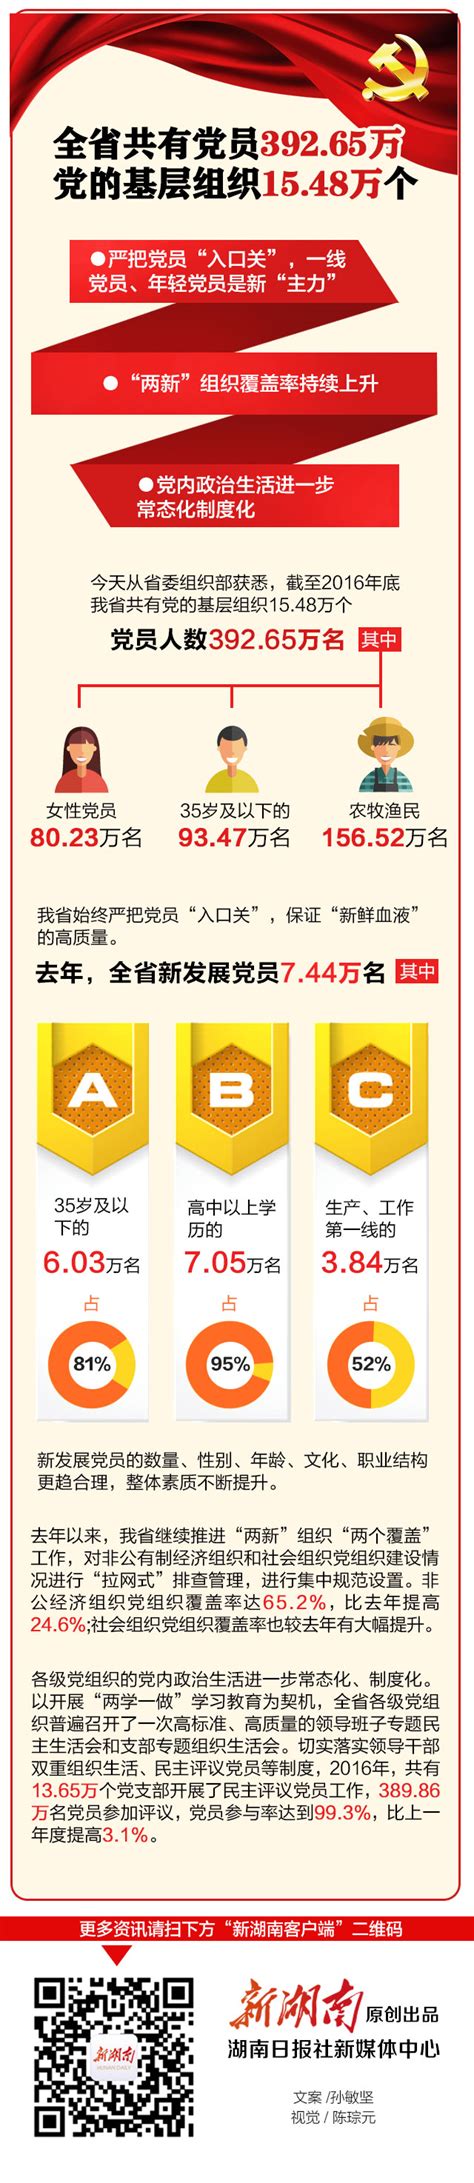 湖南共有党员392.65万 党的基层组织15.48万个 - 风向标 - 新湖南